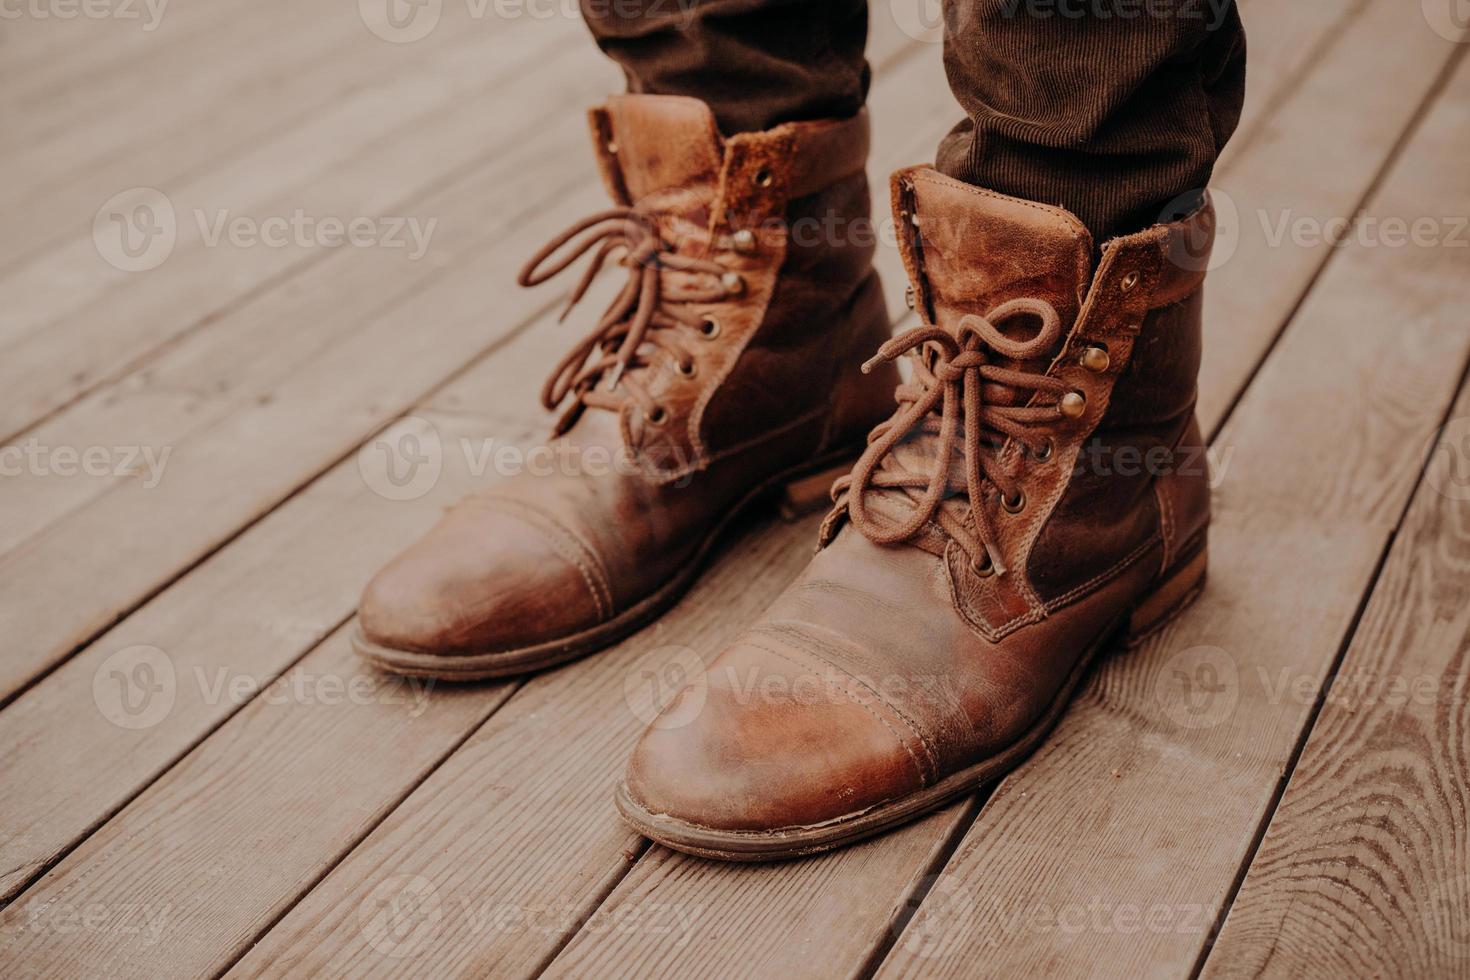 vista superior de los zapatos del hombre en el piso o superficie de madera. calzado viejo. hombre irreconocible. botas marrones de cordones 8836412 de stock Vecteezy